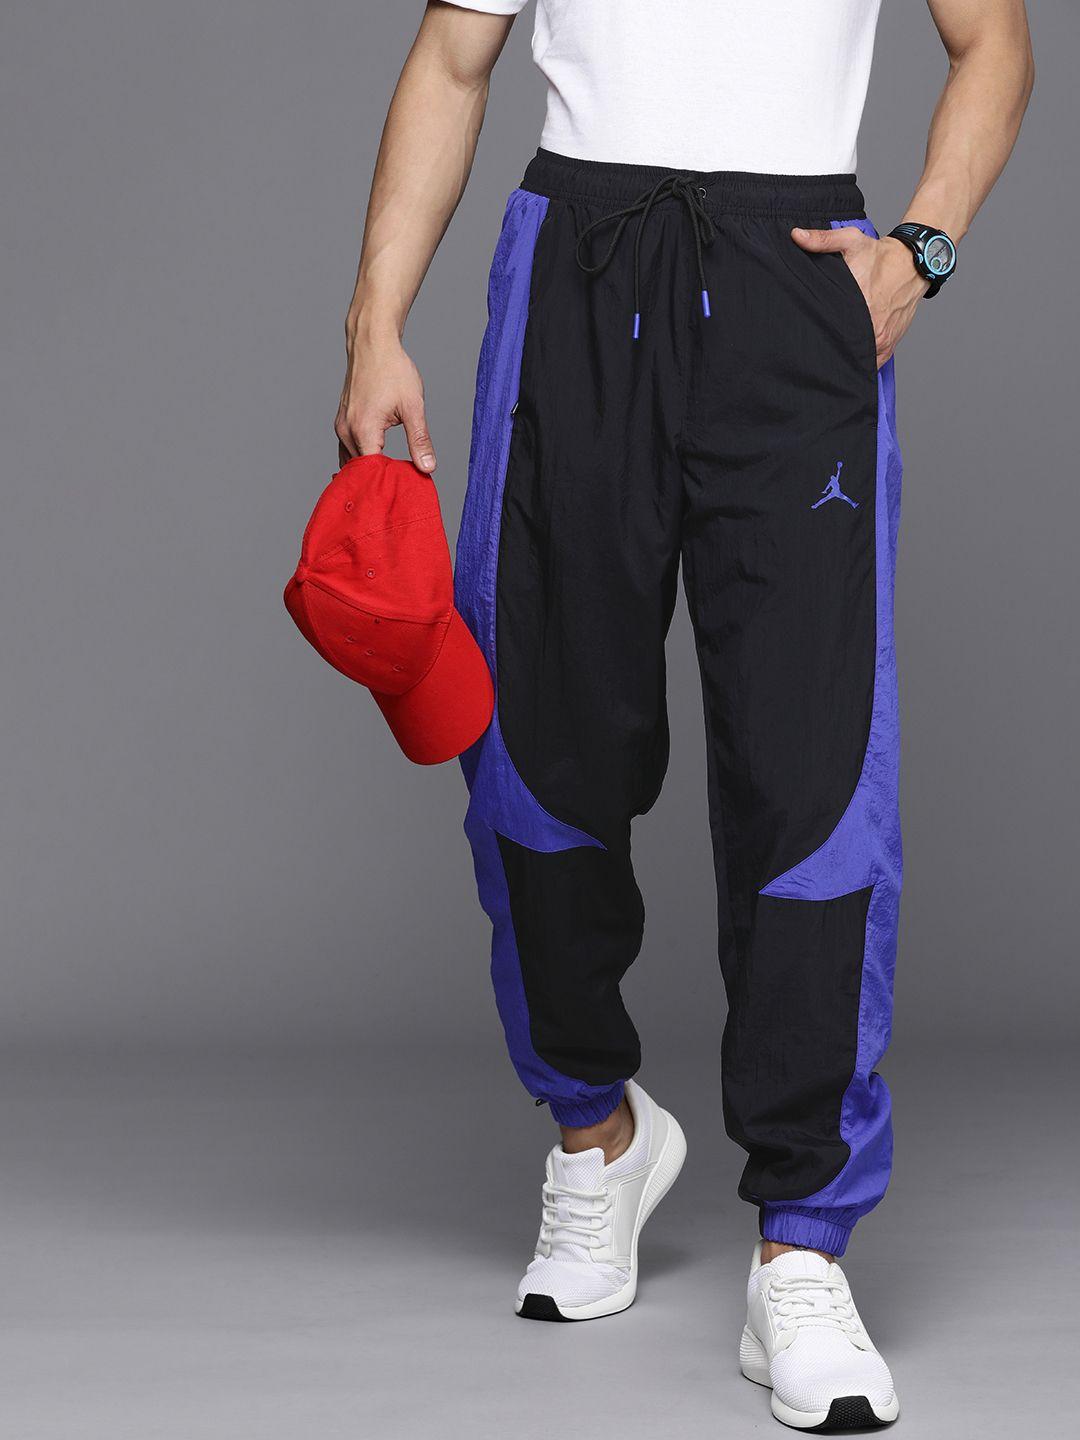 nike-men-colourblocked-jordan-jam-warm-up-repel-sport-joggers-pants